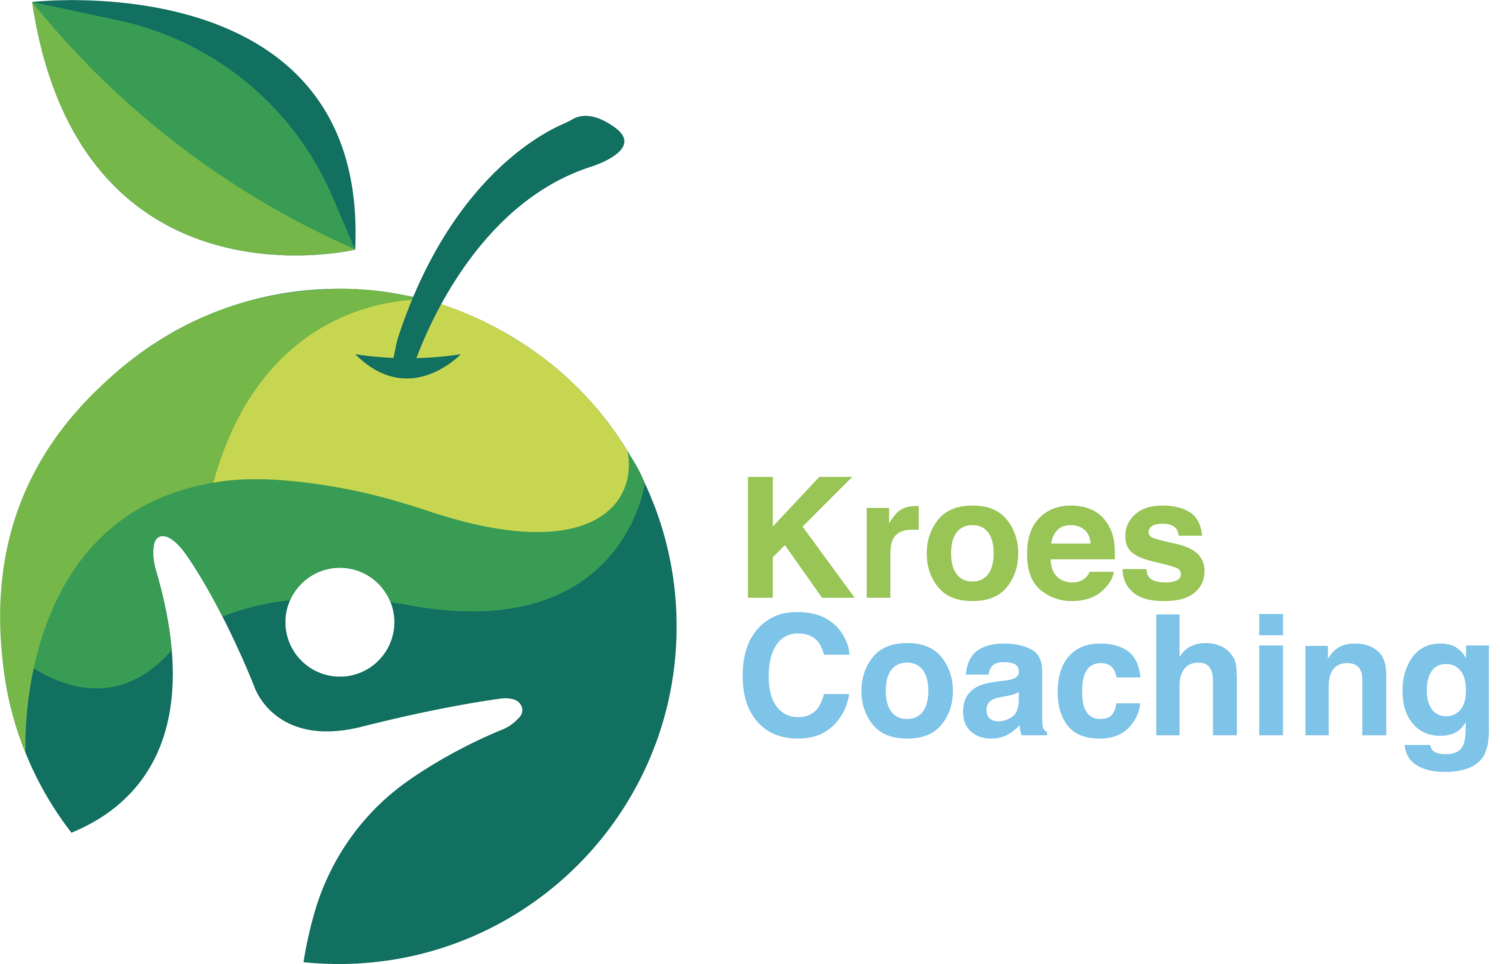 Kroes coaching